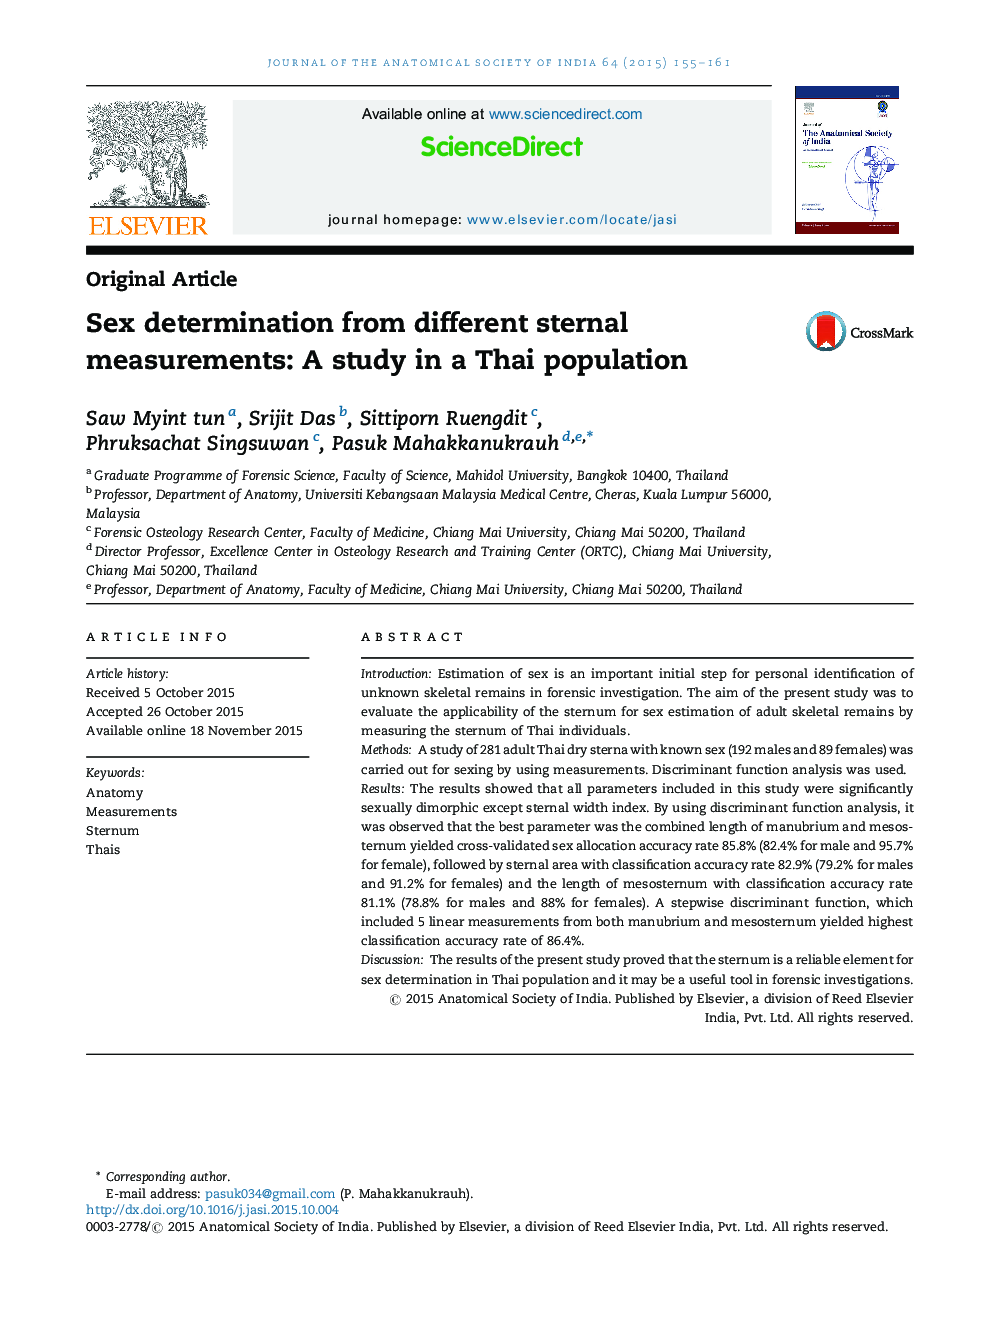 تعیین جنسیت از اندازه گیری های مختلف سینه: مطالعه در یک جمعیت تایلندی 